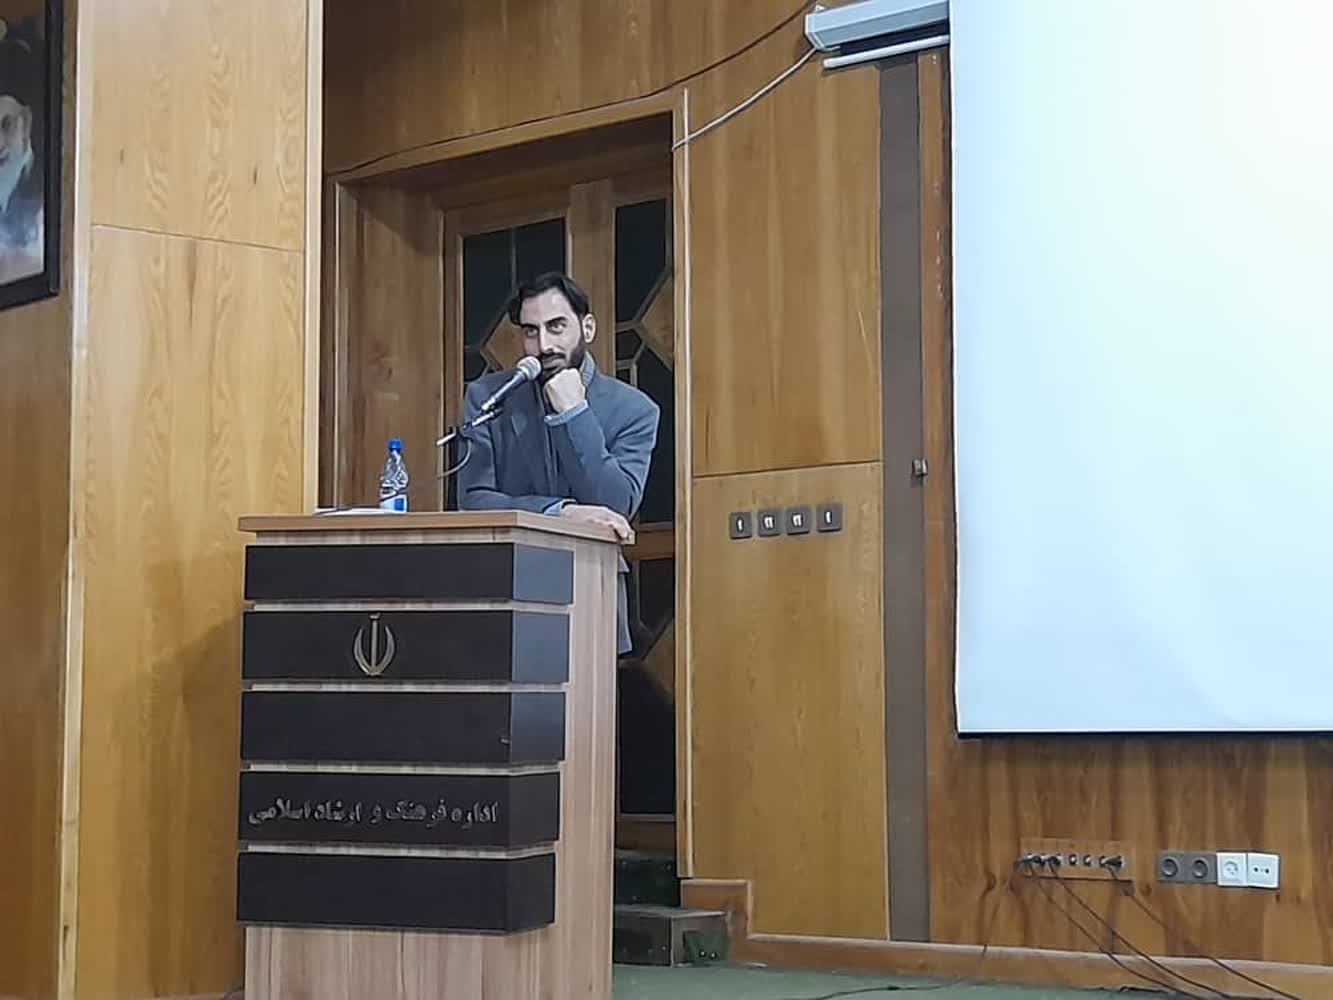 انجمن سینمای جوان فارس محروم از یک ساختمان اختصاصی